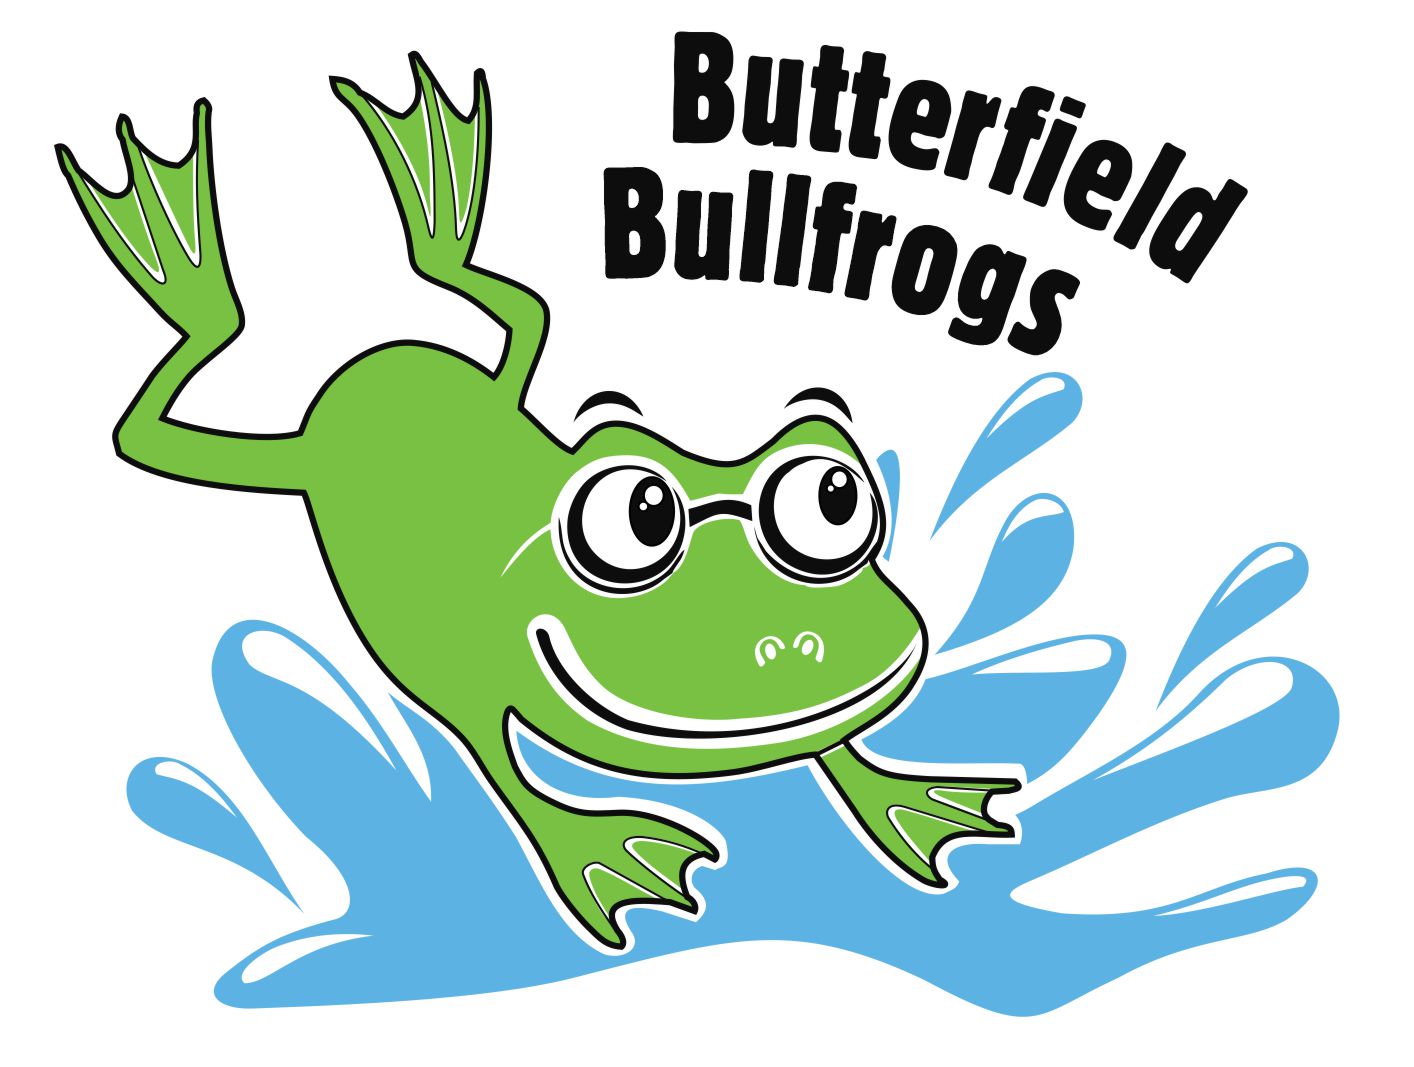 Butterfield Bullfrogs